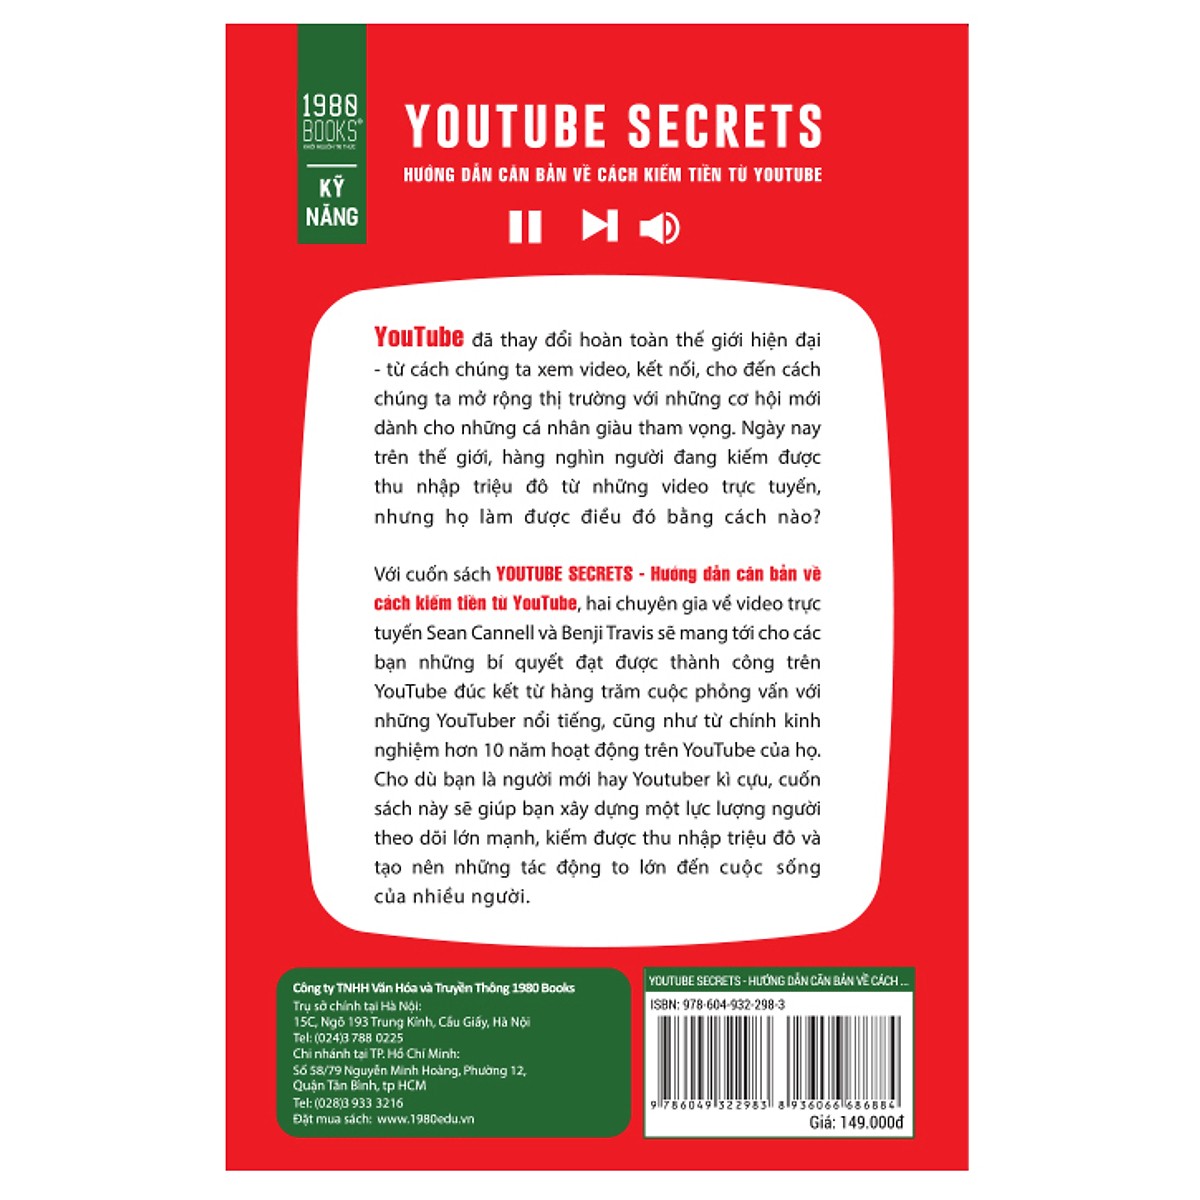 Cuốn Sách Khỏi Nghiệp Bán Chạy Nhất Thế Giới Năm 2019: Youtube Secrets - Hướng Dẫn Căn Bản Cách Kiếm Tiền Từ Youtube